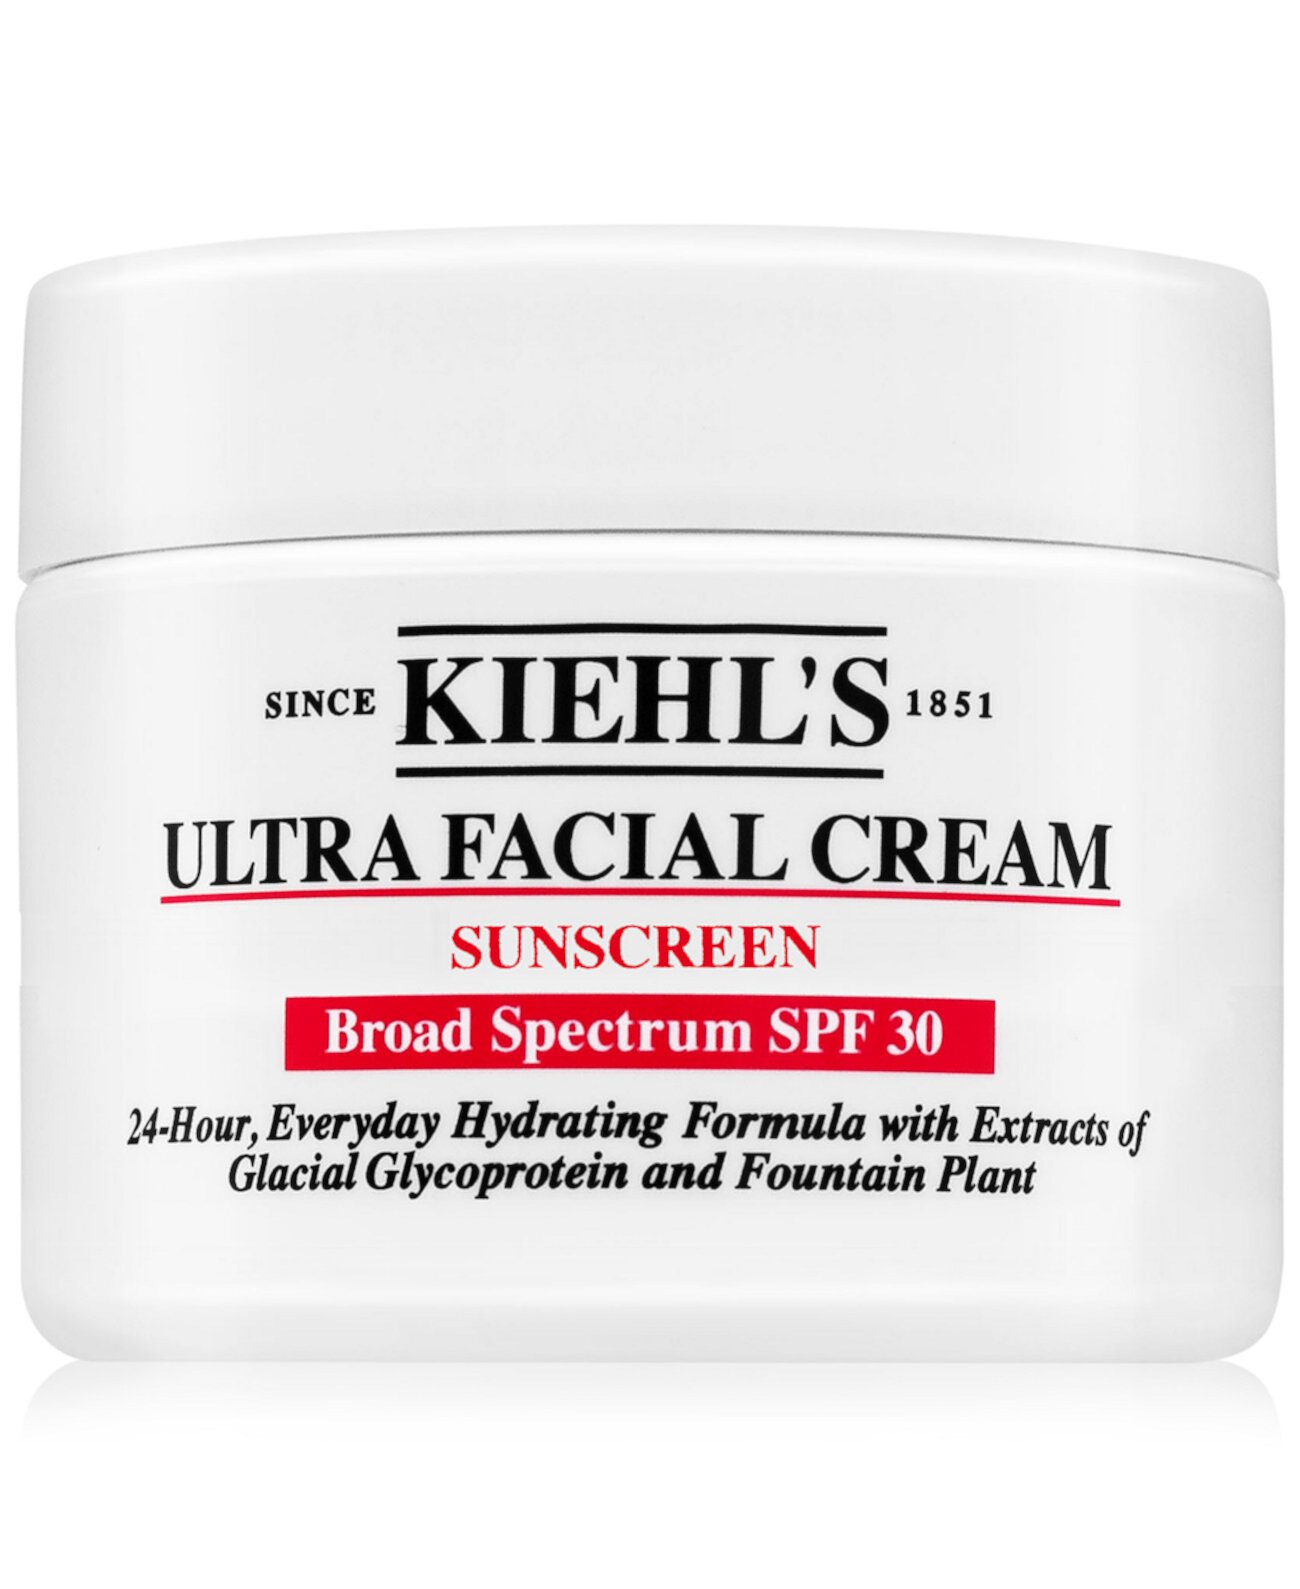 Солнцезащитный крем для лица Ultra Facial Cream SPF 30, 1,7 унции. Kiehl's Since 1851